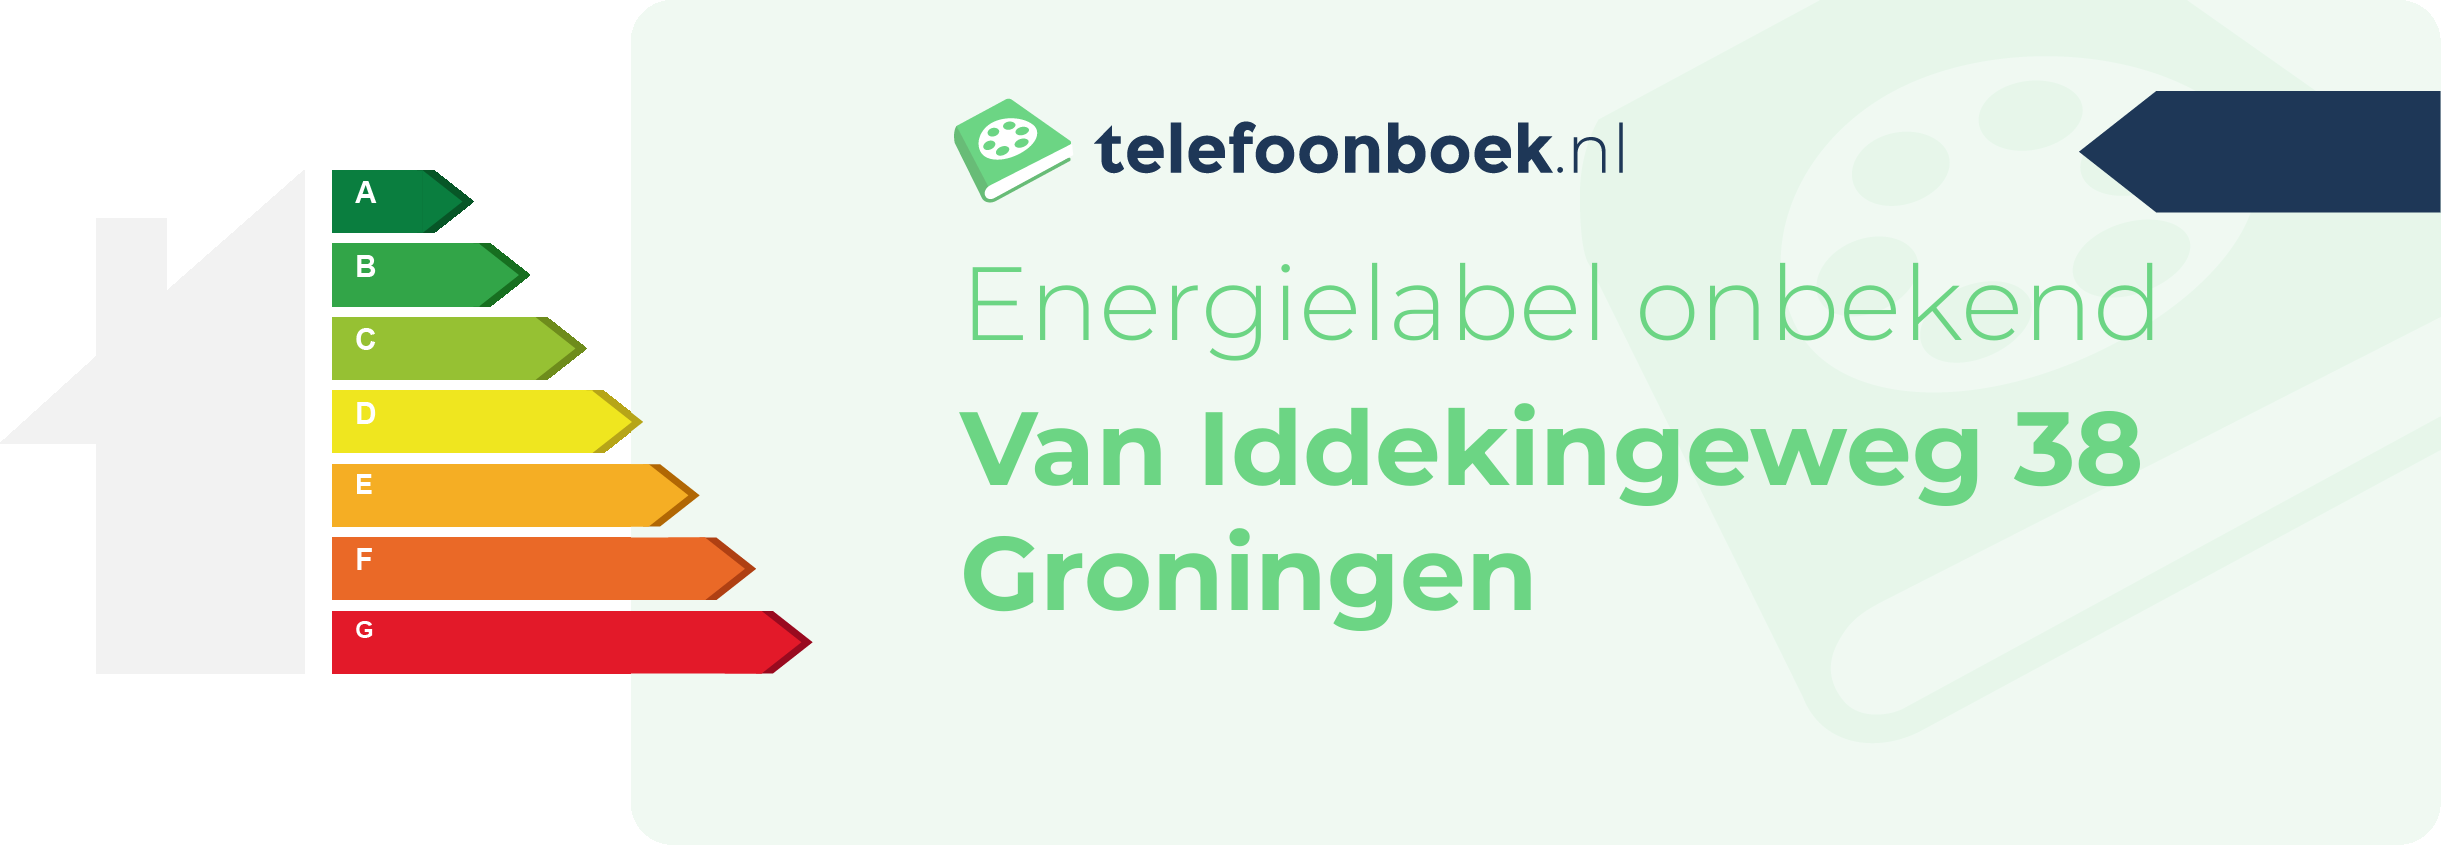 Energielabel Van Iddekingeweg 38 Groningen